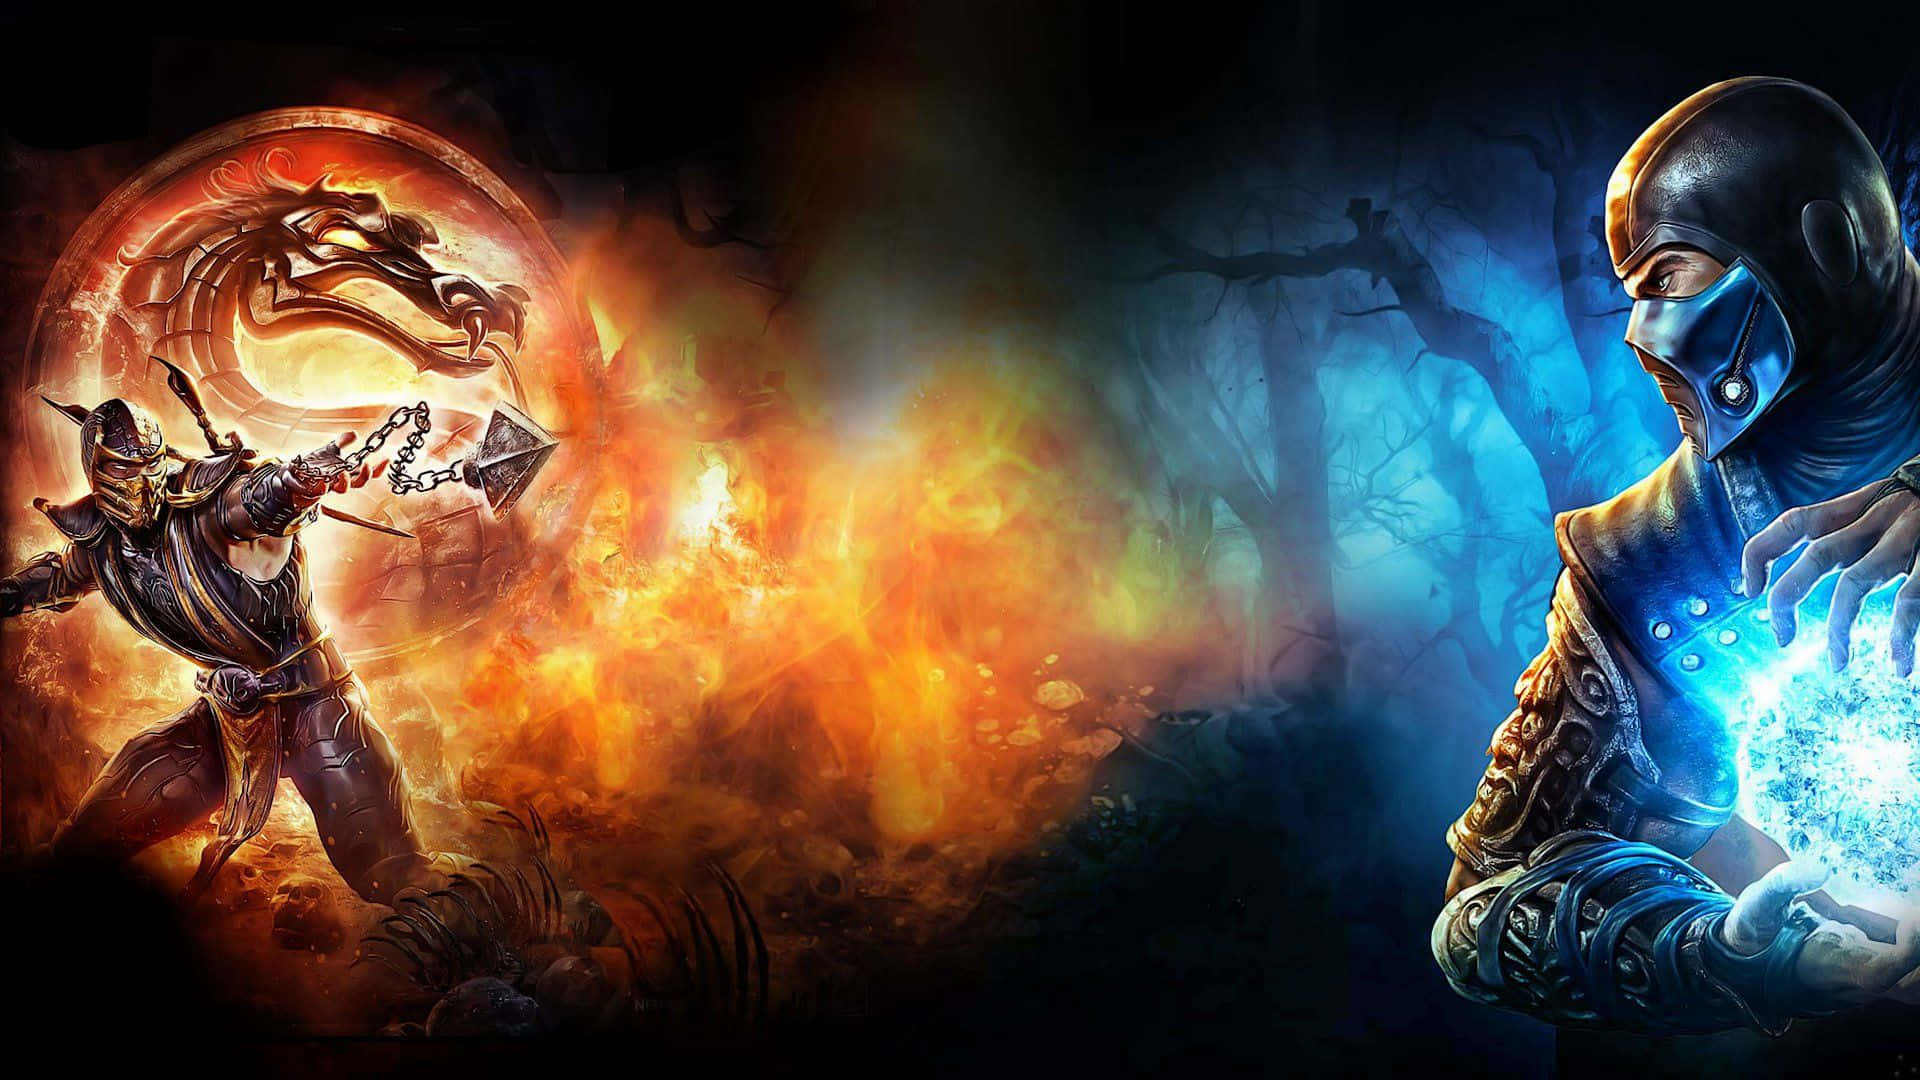 Epic Battle Scene from Mortal Kombat Legacy Wallpaper